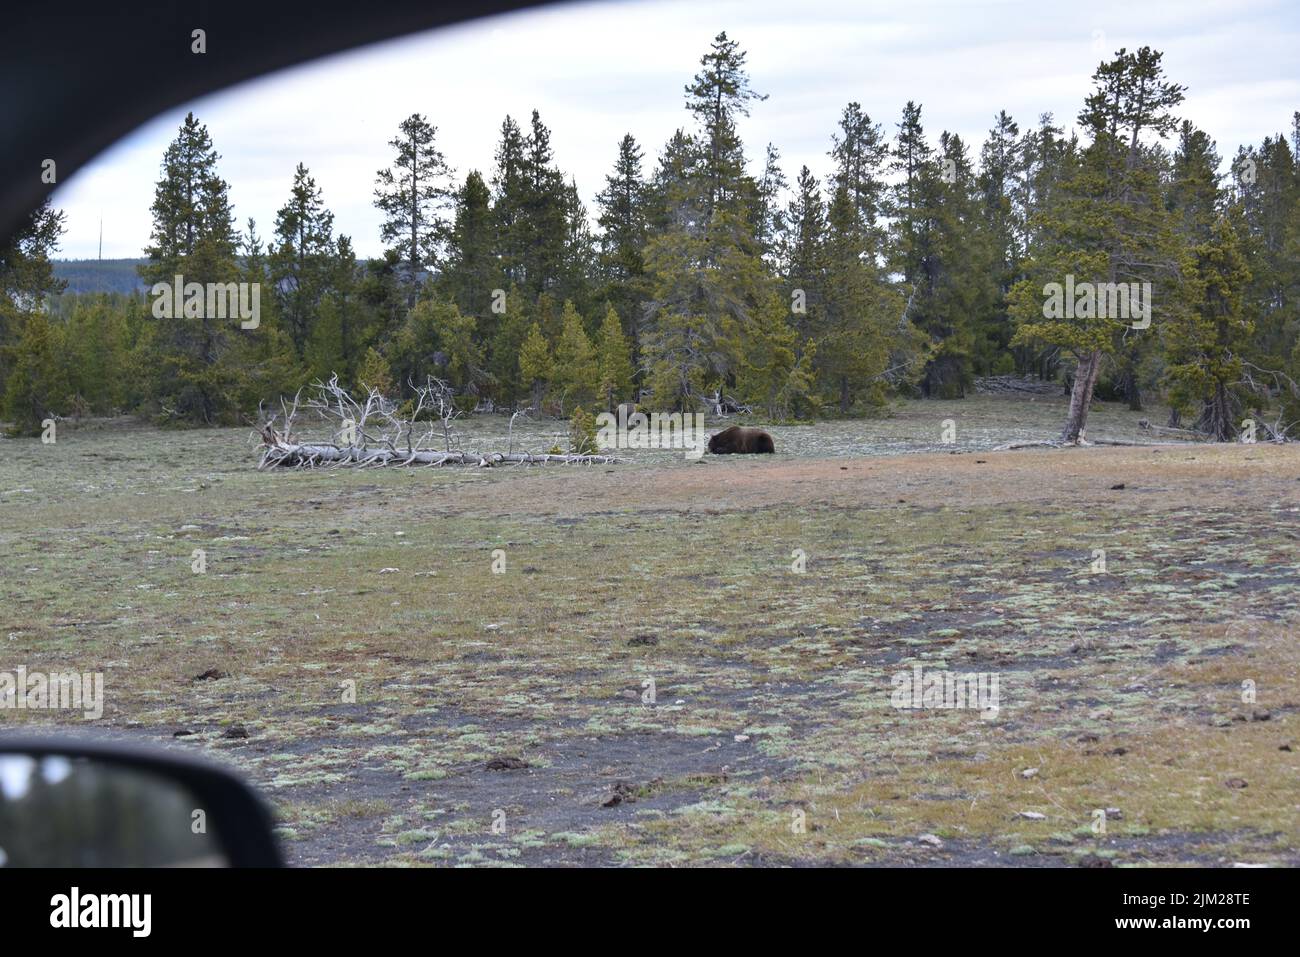 Parc national de Yellowstone. U.S.A. Grizzle est très proche de l'autoroute... peut-être à 50 mètres. Le grizzli (Ursus arctos horribilis), Banque D'Images